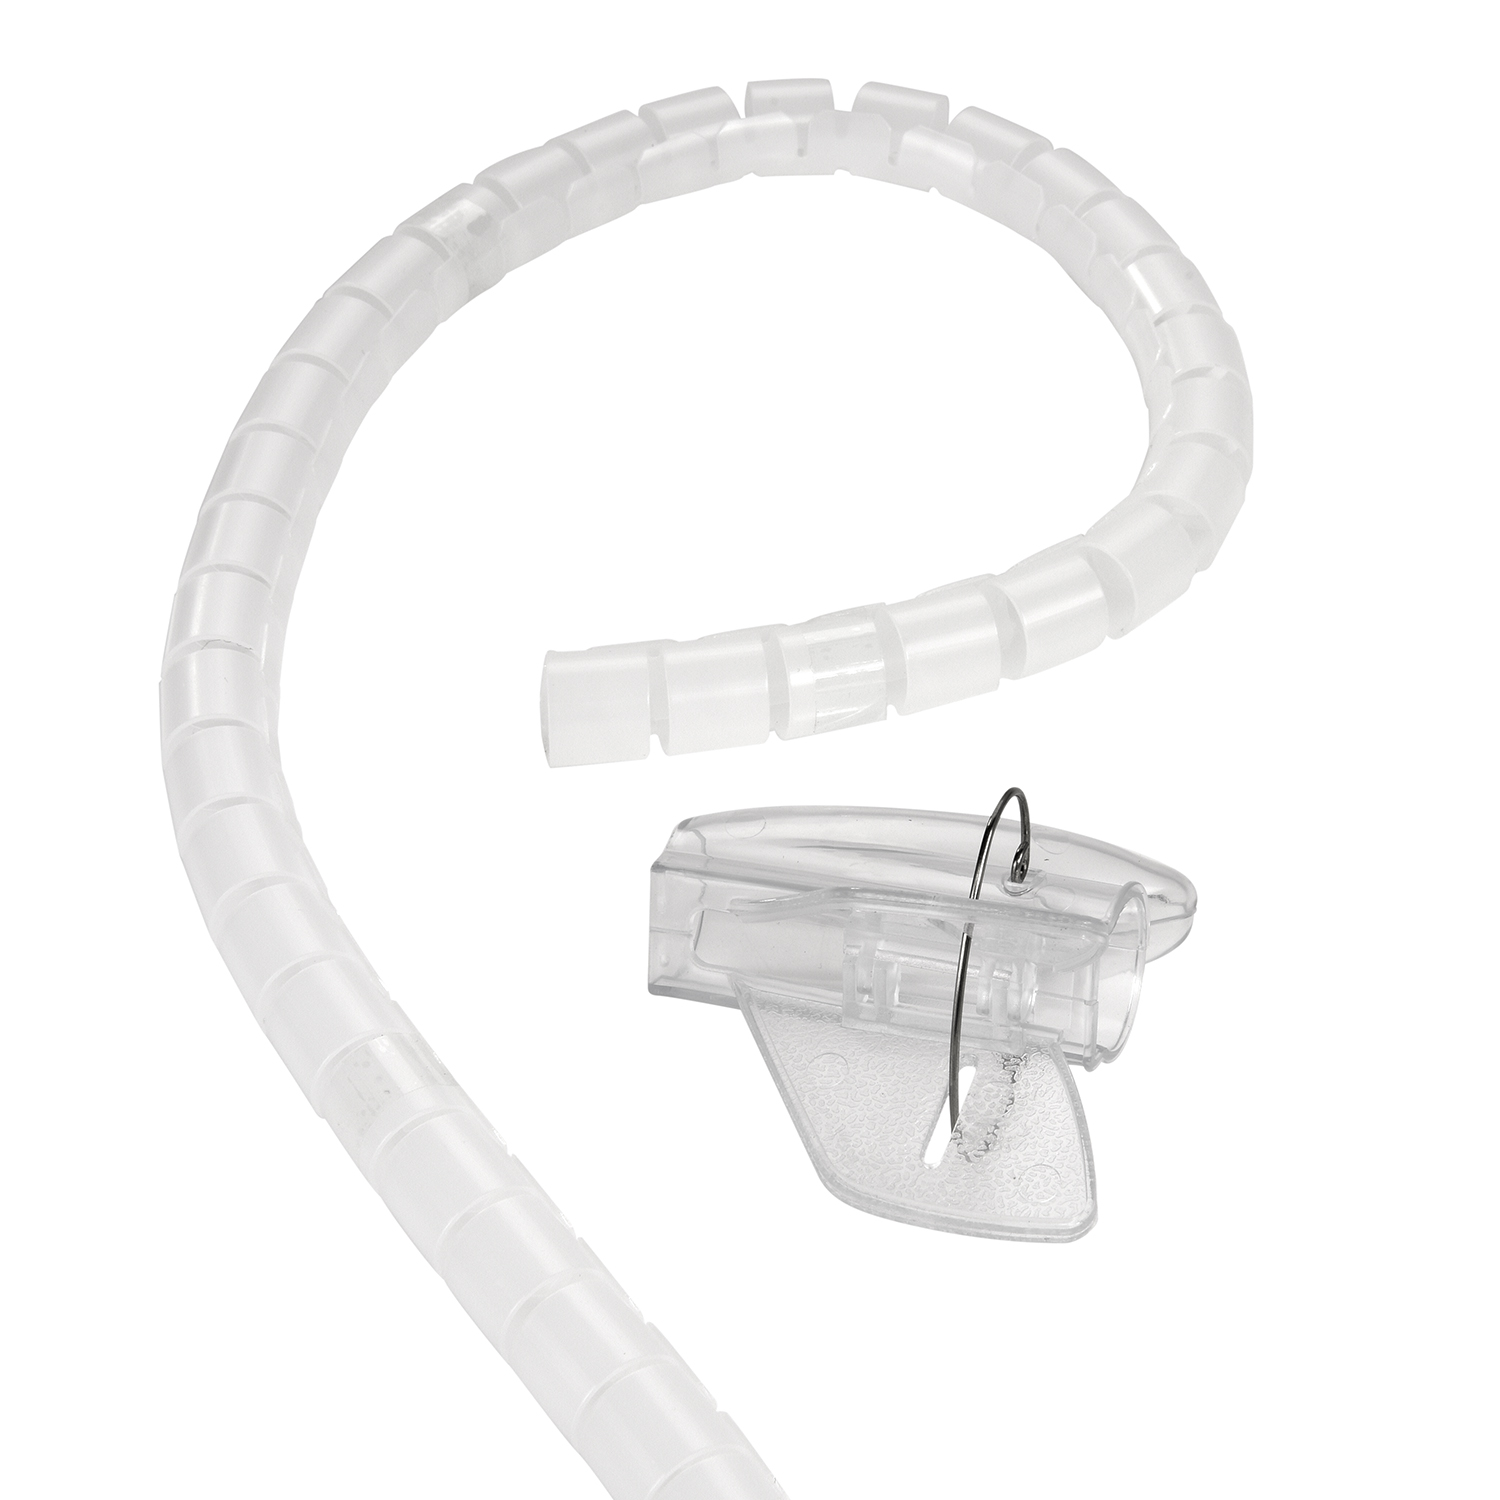 Spiral-Kabelschlauch Transparent, 2m 30mm, mit Einfädelhilfe, Transparent TPFNET Kabelschlauch, Premium